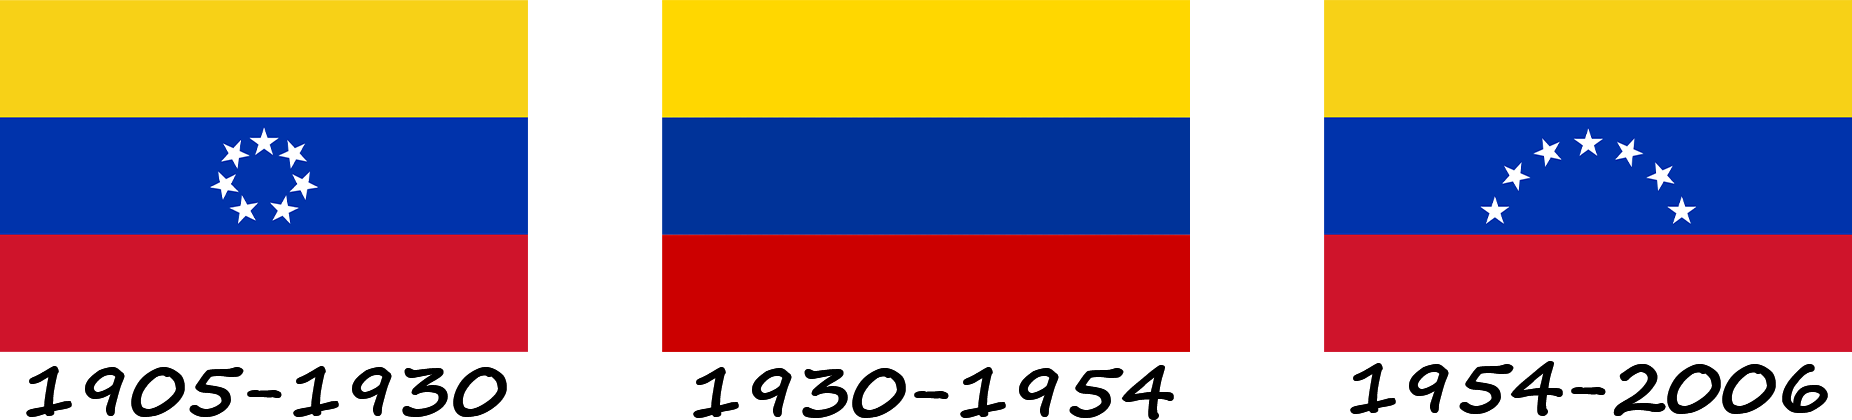 Historia de la bandera de Venezuela